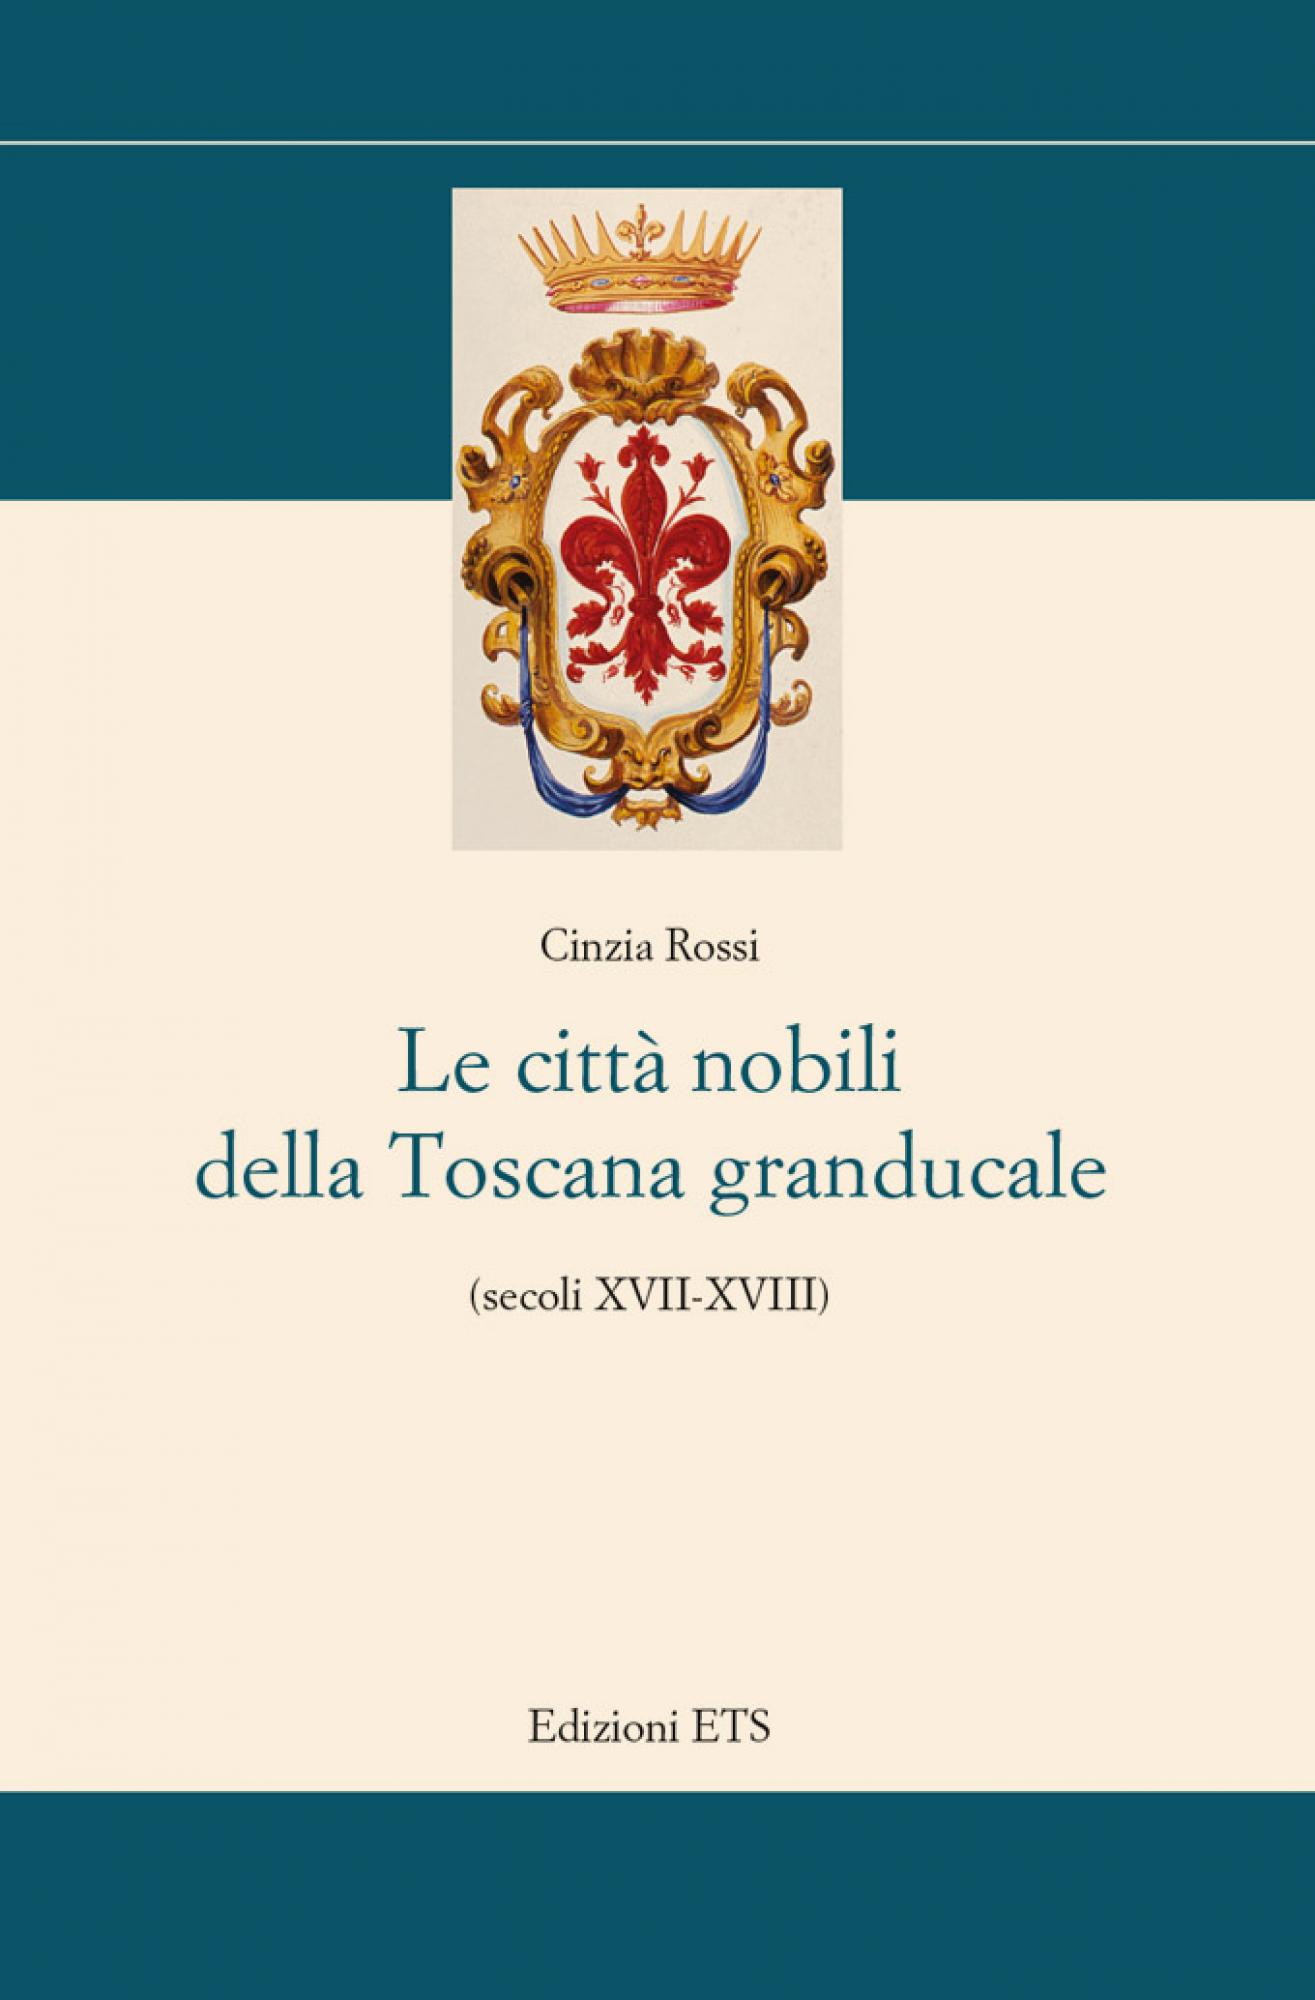 Le città nobili della Toscana granducale.(secoli XVII-XVIII)